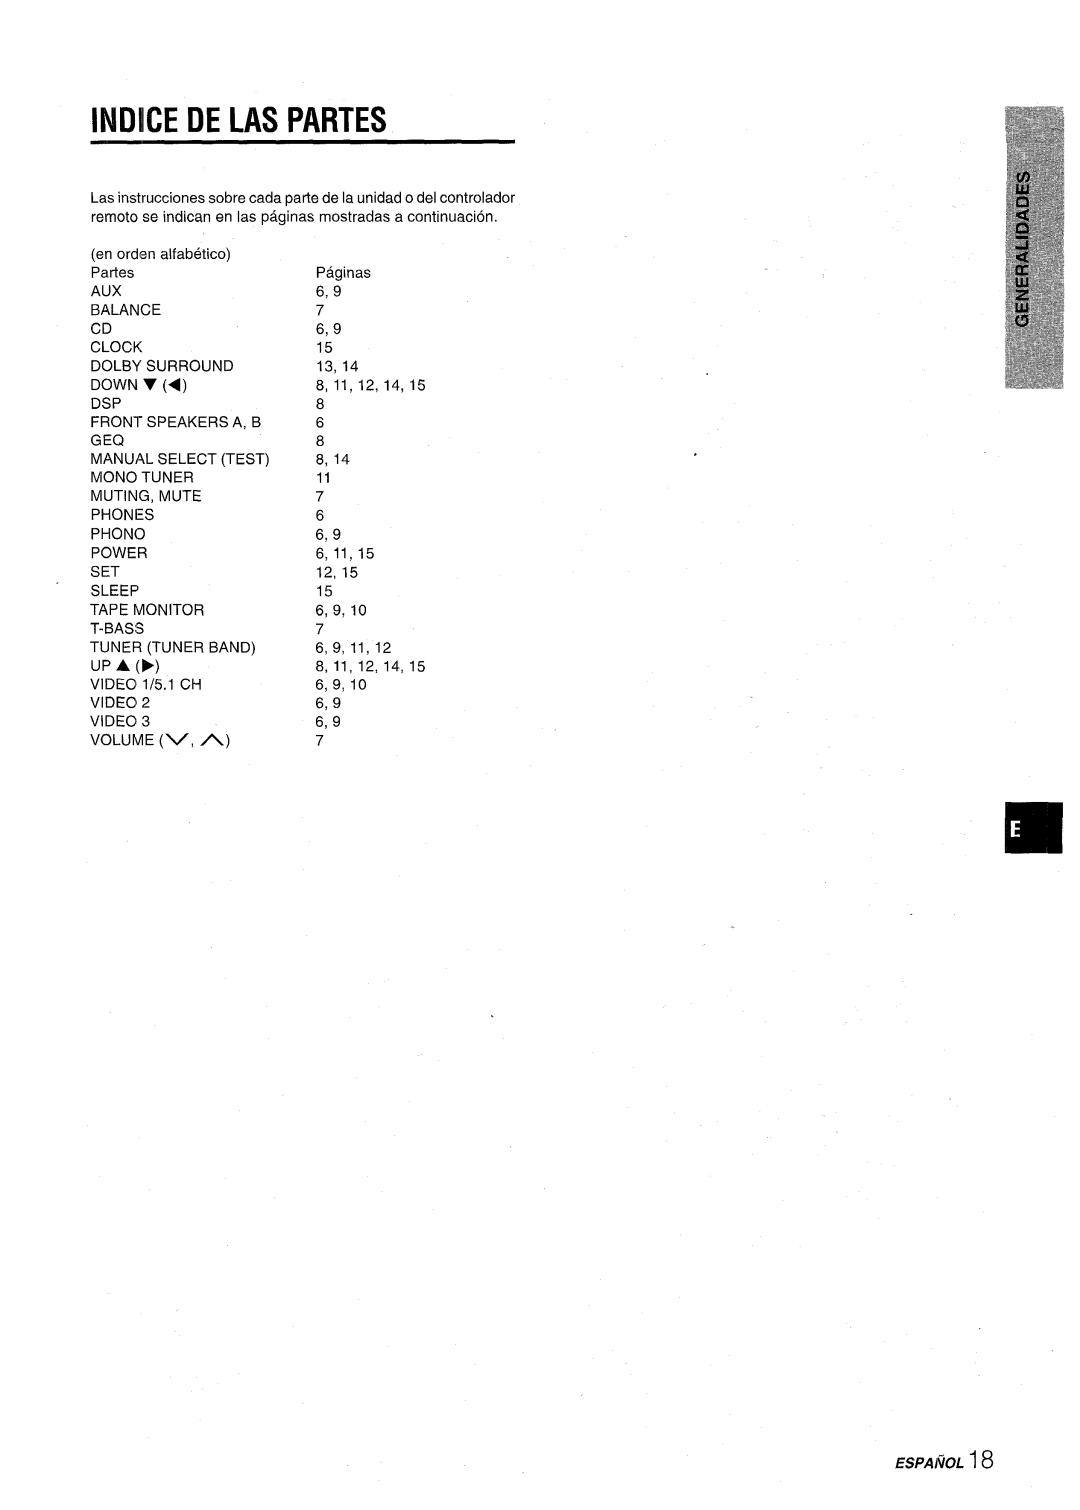 Aiwa AV-D30 manual Indice De Las Partes, ESPAl~OL 